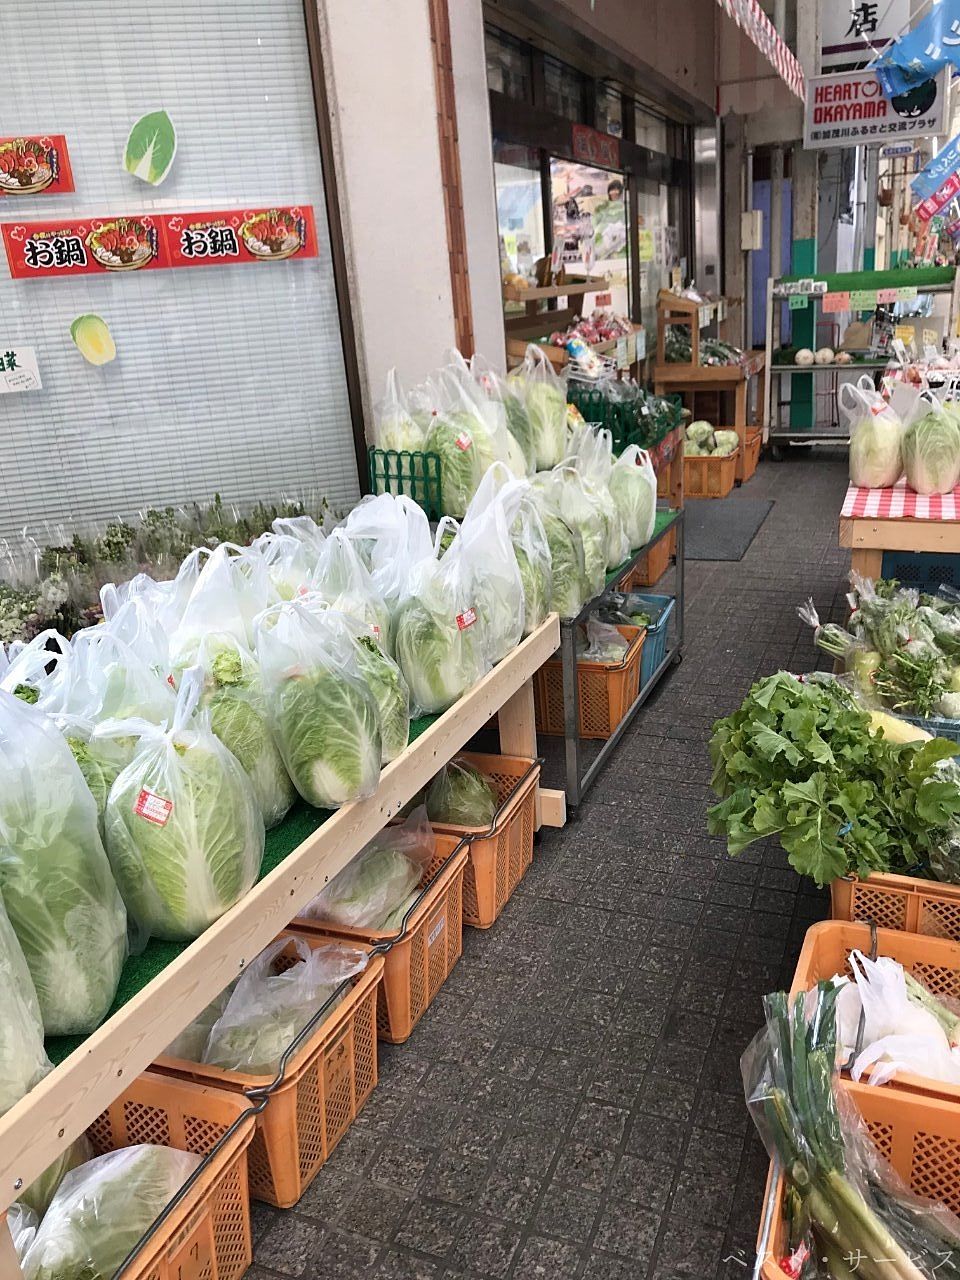 かもがわの名物白菜/円城道の駅の近くに白菜の加工場があり「キムチ」も製造しています